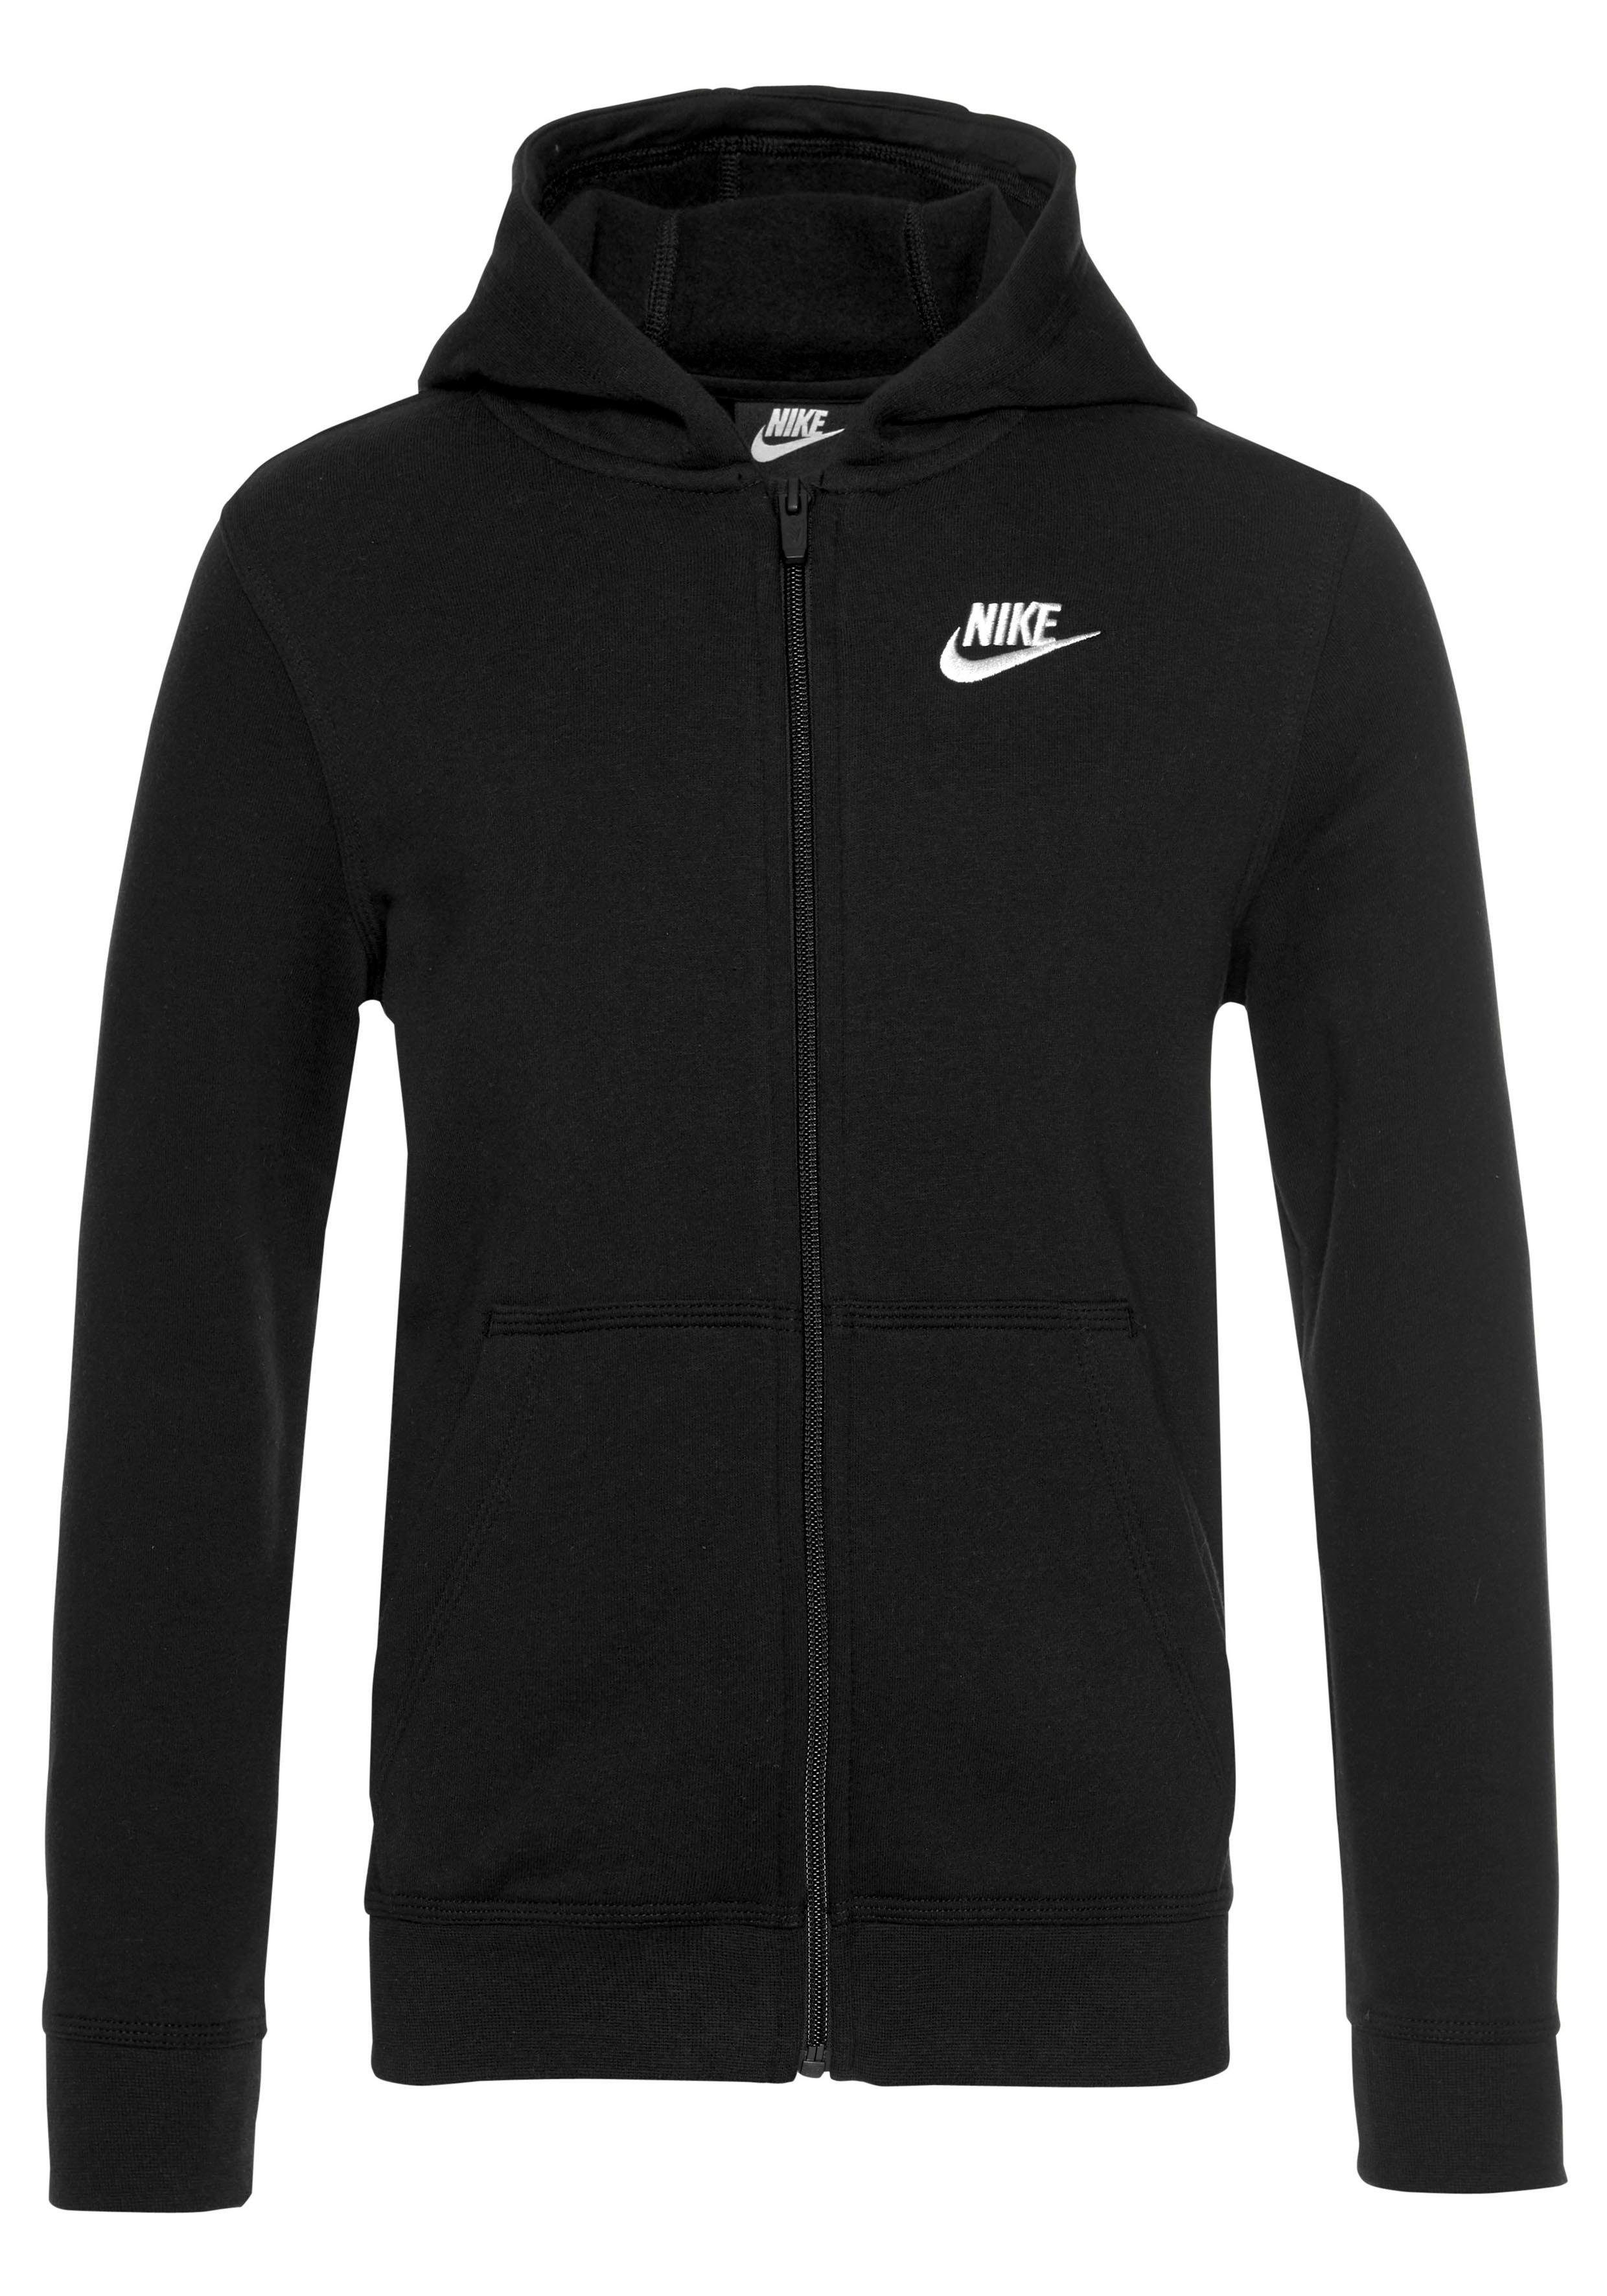 NSW Nike schwarz Sportswear FZ für CLUB HOODIE - Kinder Kapuzensweatjacke